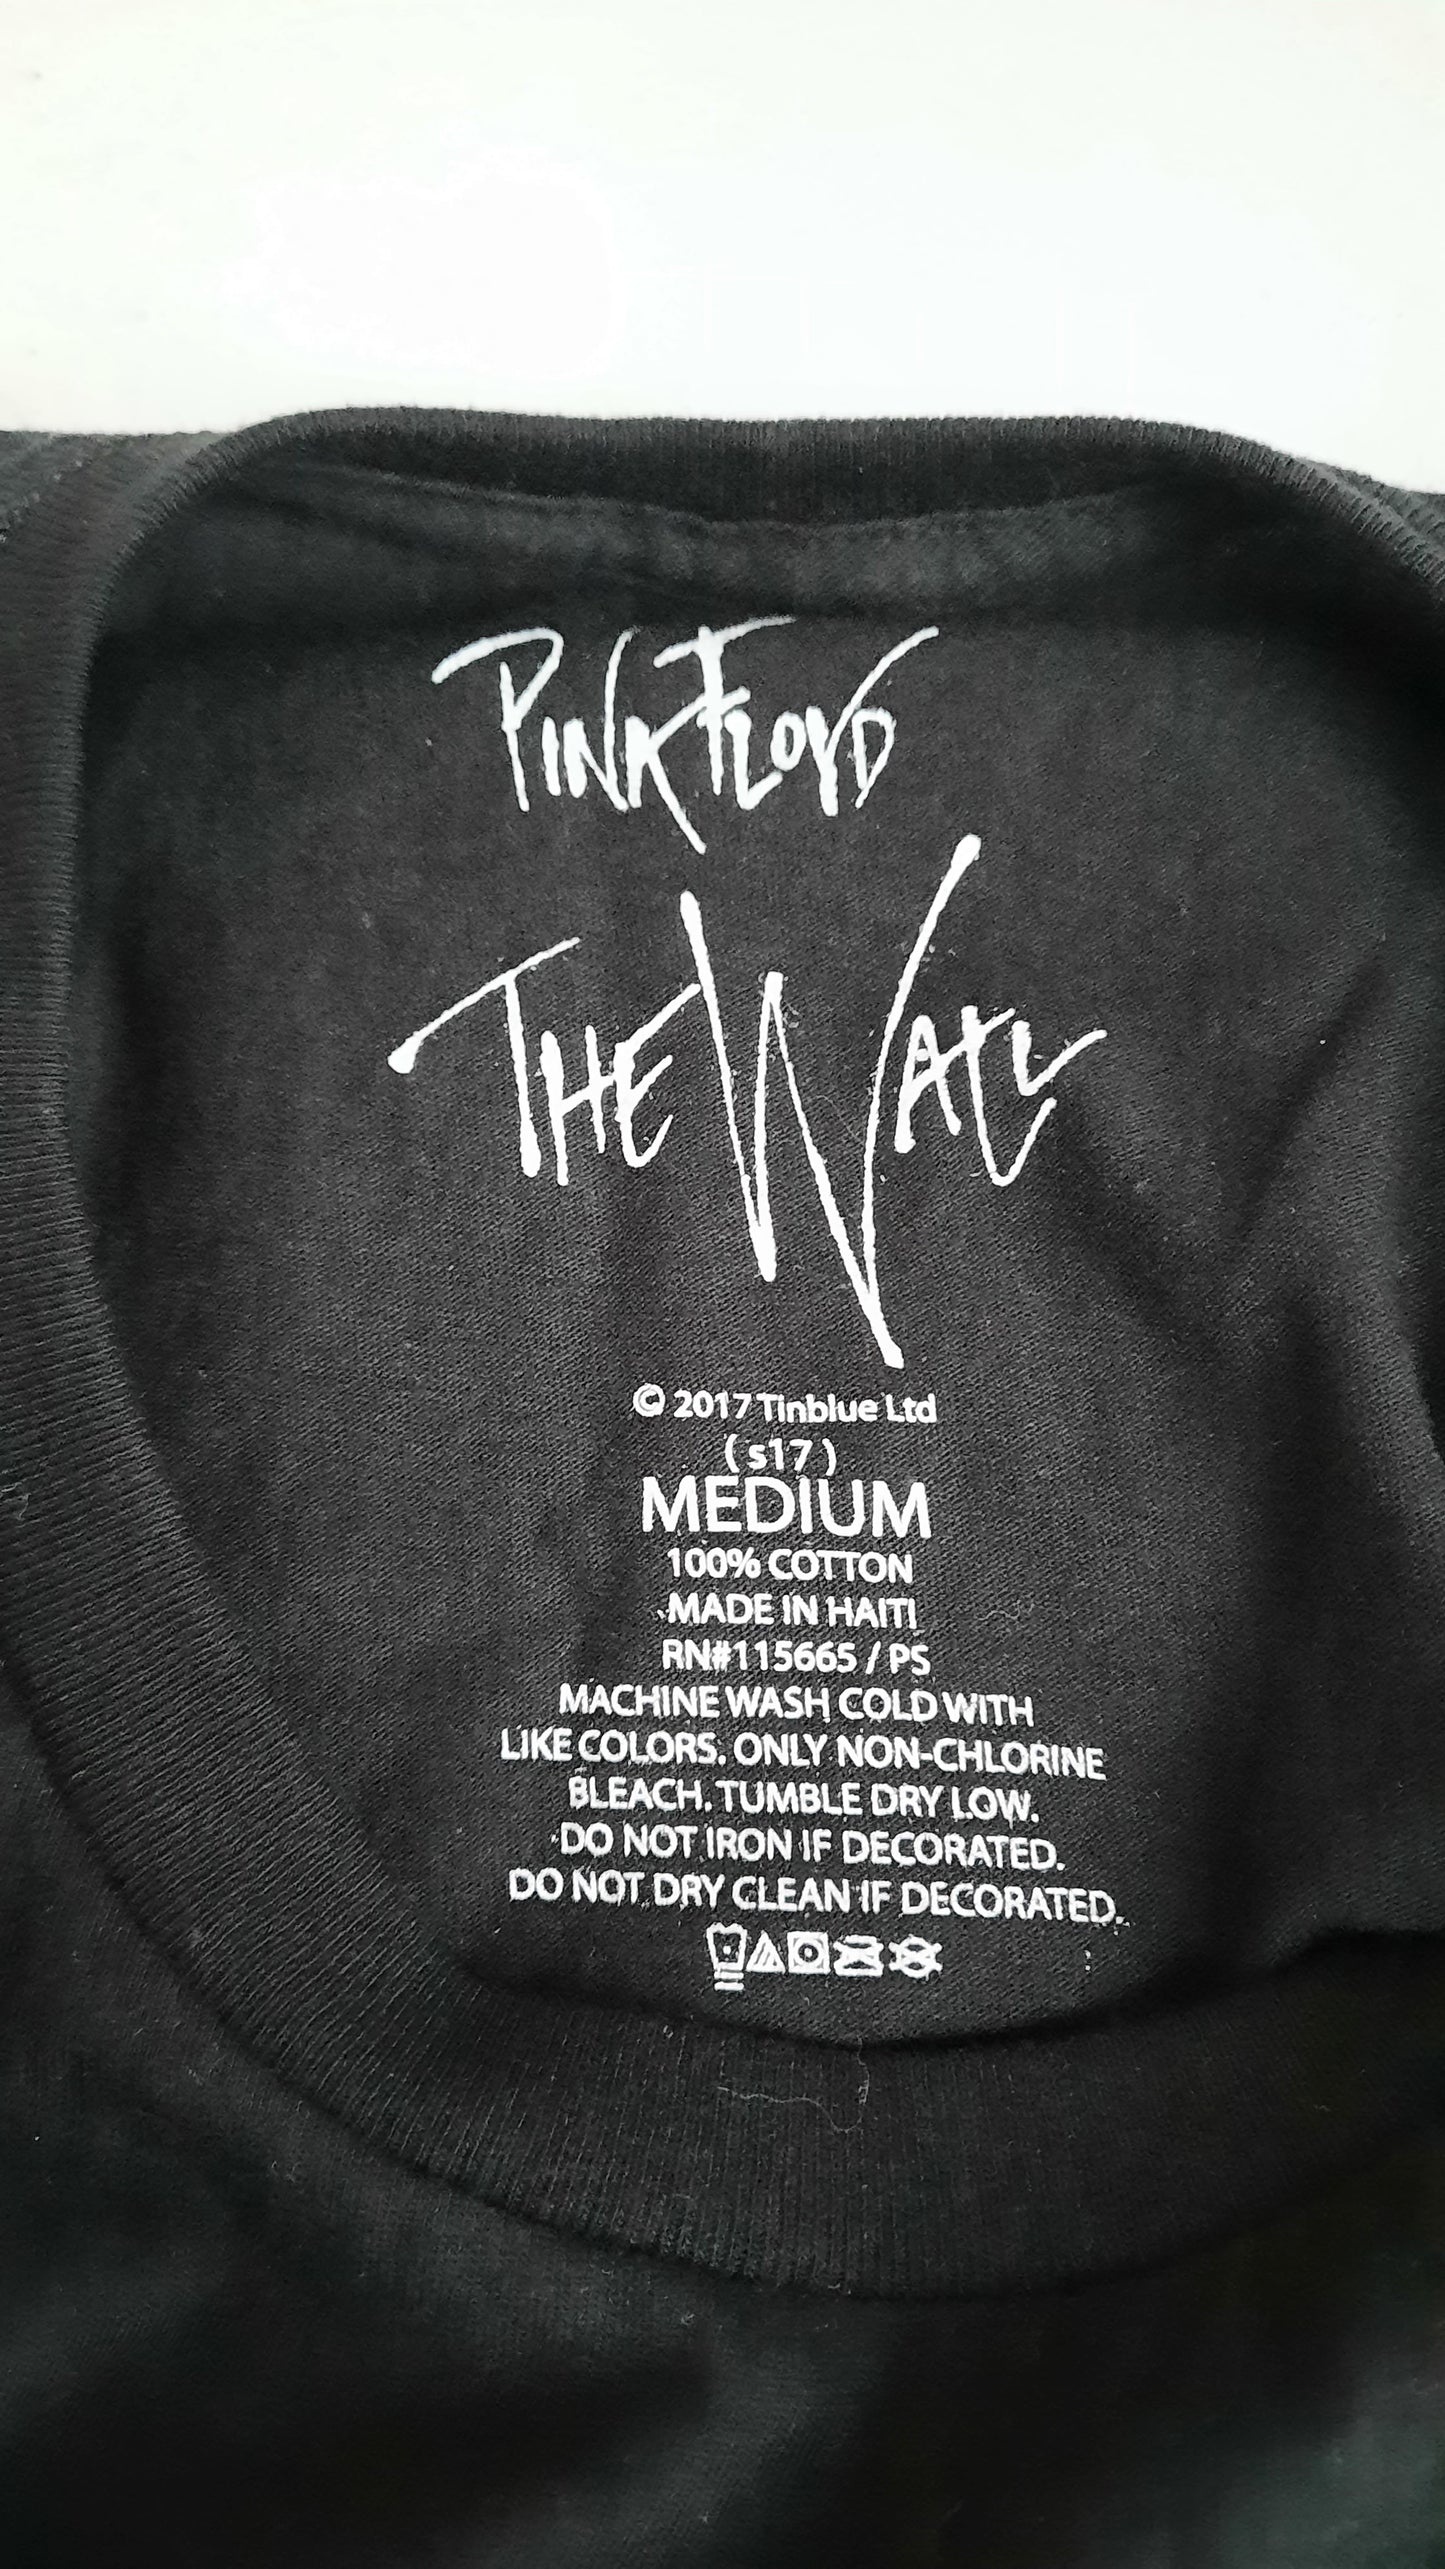 Official Pink Floyd "The Wall" Merch T-shirt